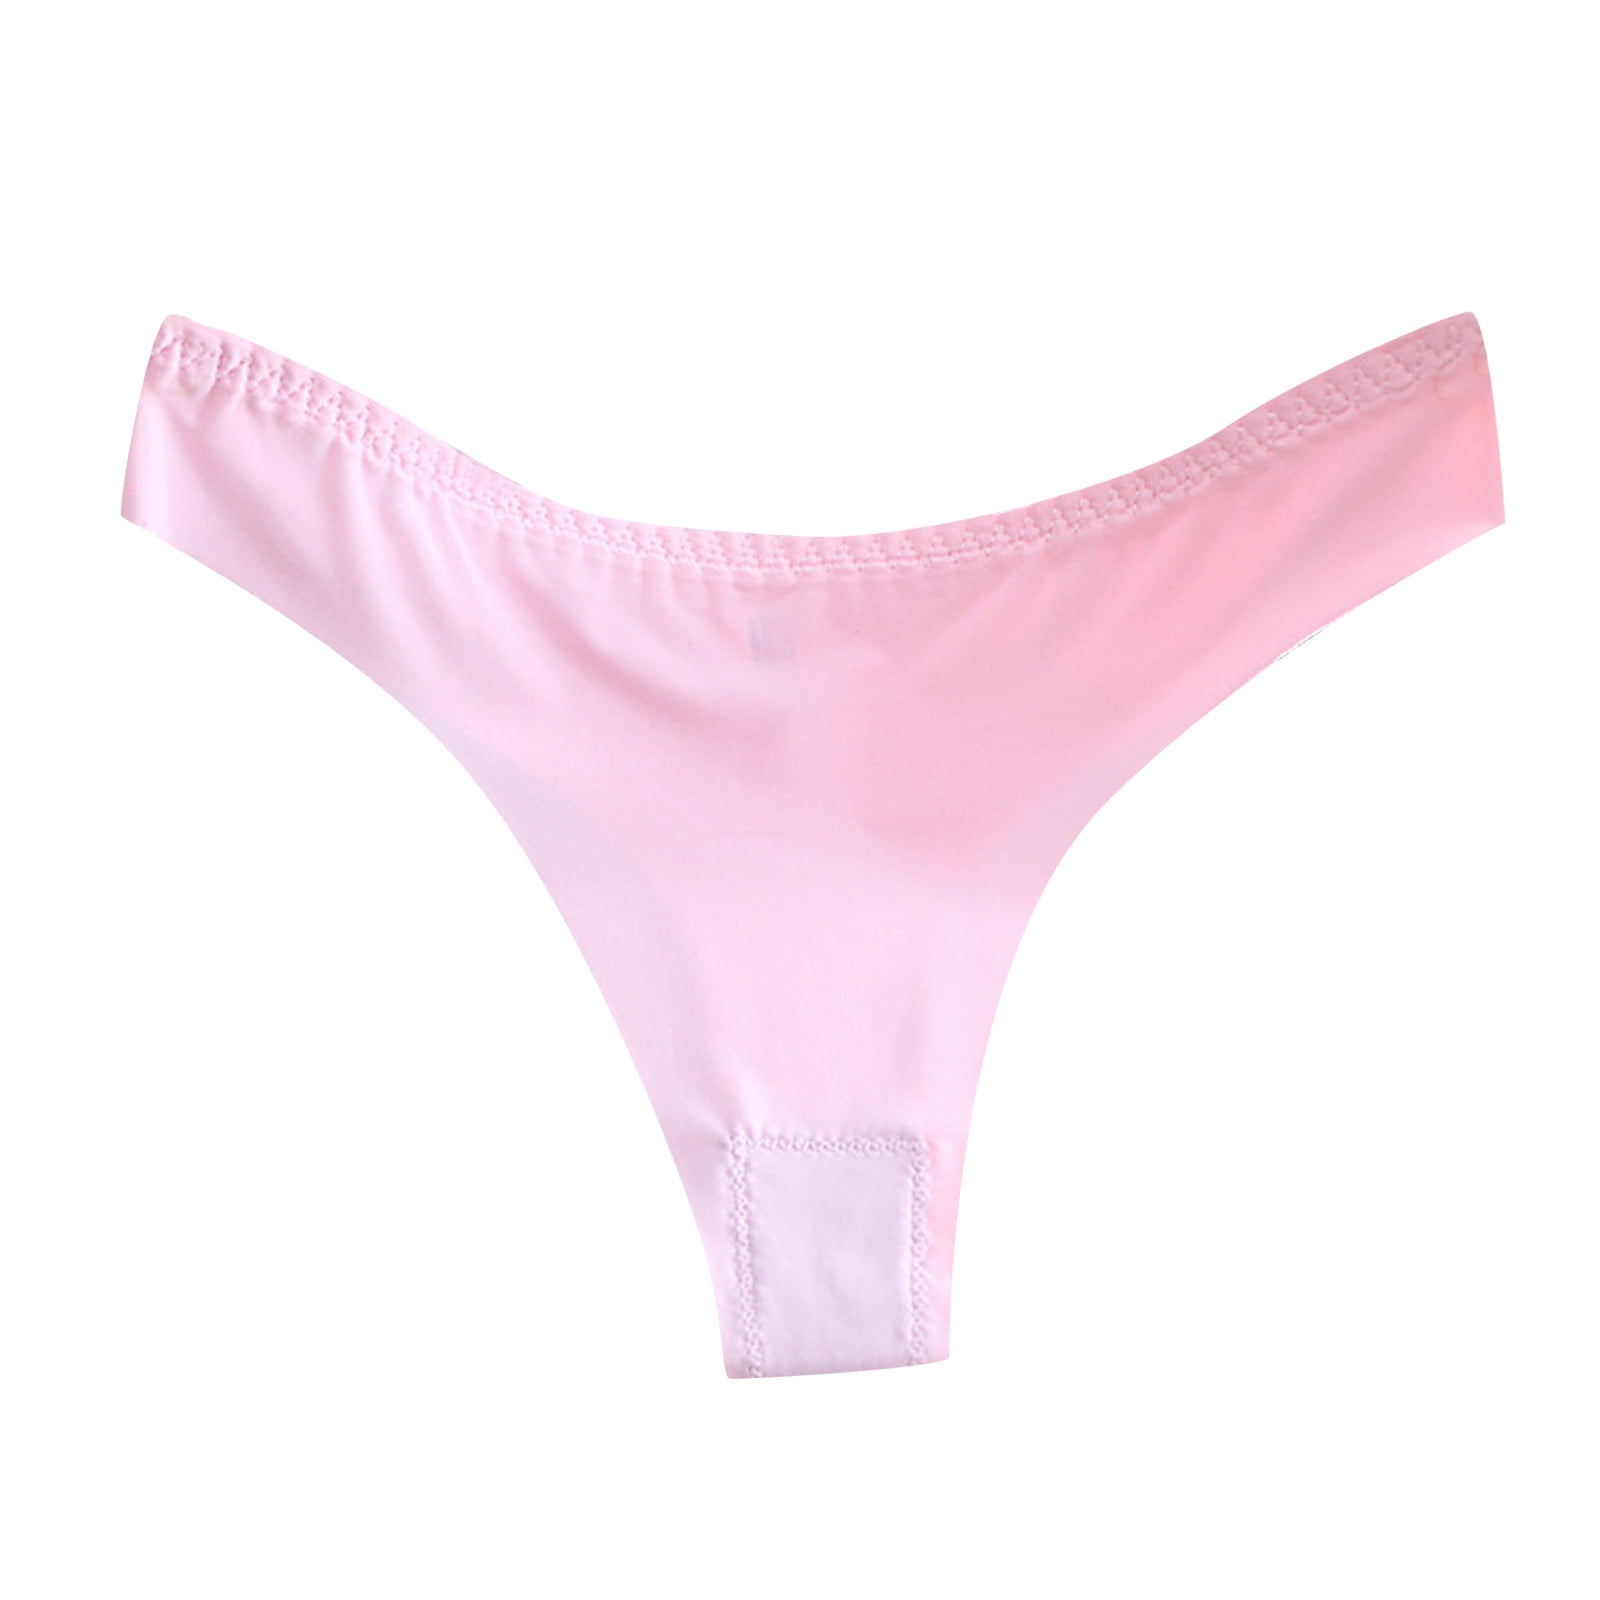 LBECLEY Ladies Underwear Briefs Cotton Lace Underwear for Women Breathable  Bikini Lightweight Soft Hipster Panties Womens Underwear Lace Bikini Pink L  